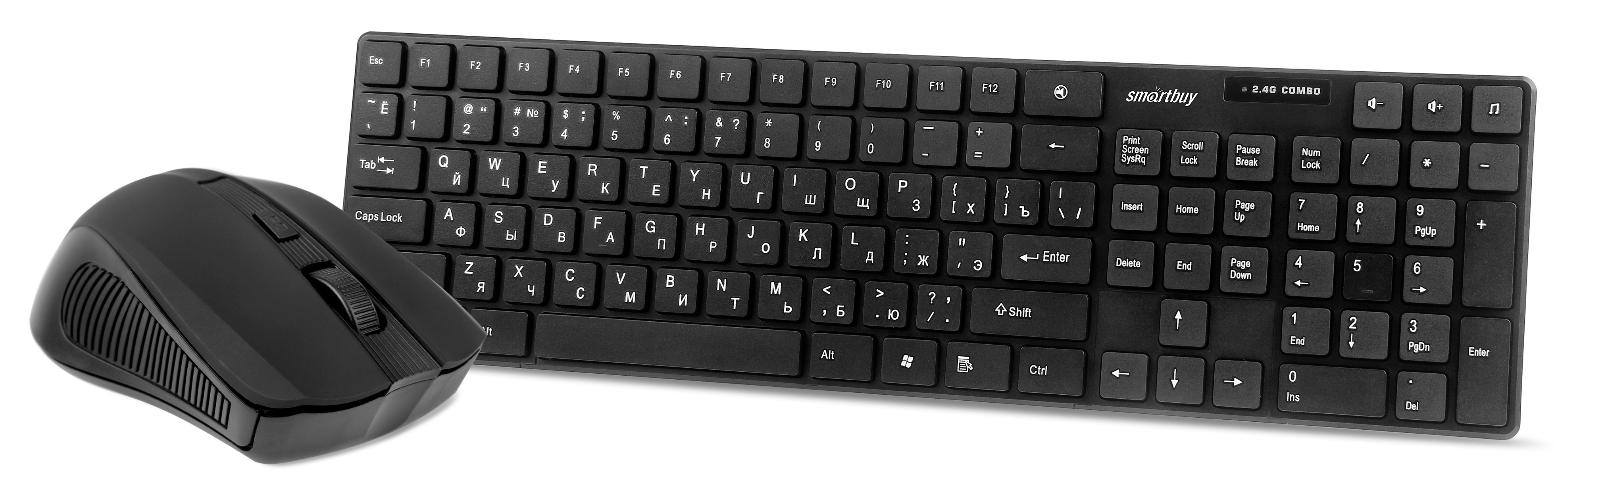 Клавиатура + мышь SmartBuy ONE 229352AG, беспроводной, USB, черный (SBC-229352AG-K) - фото 1